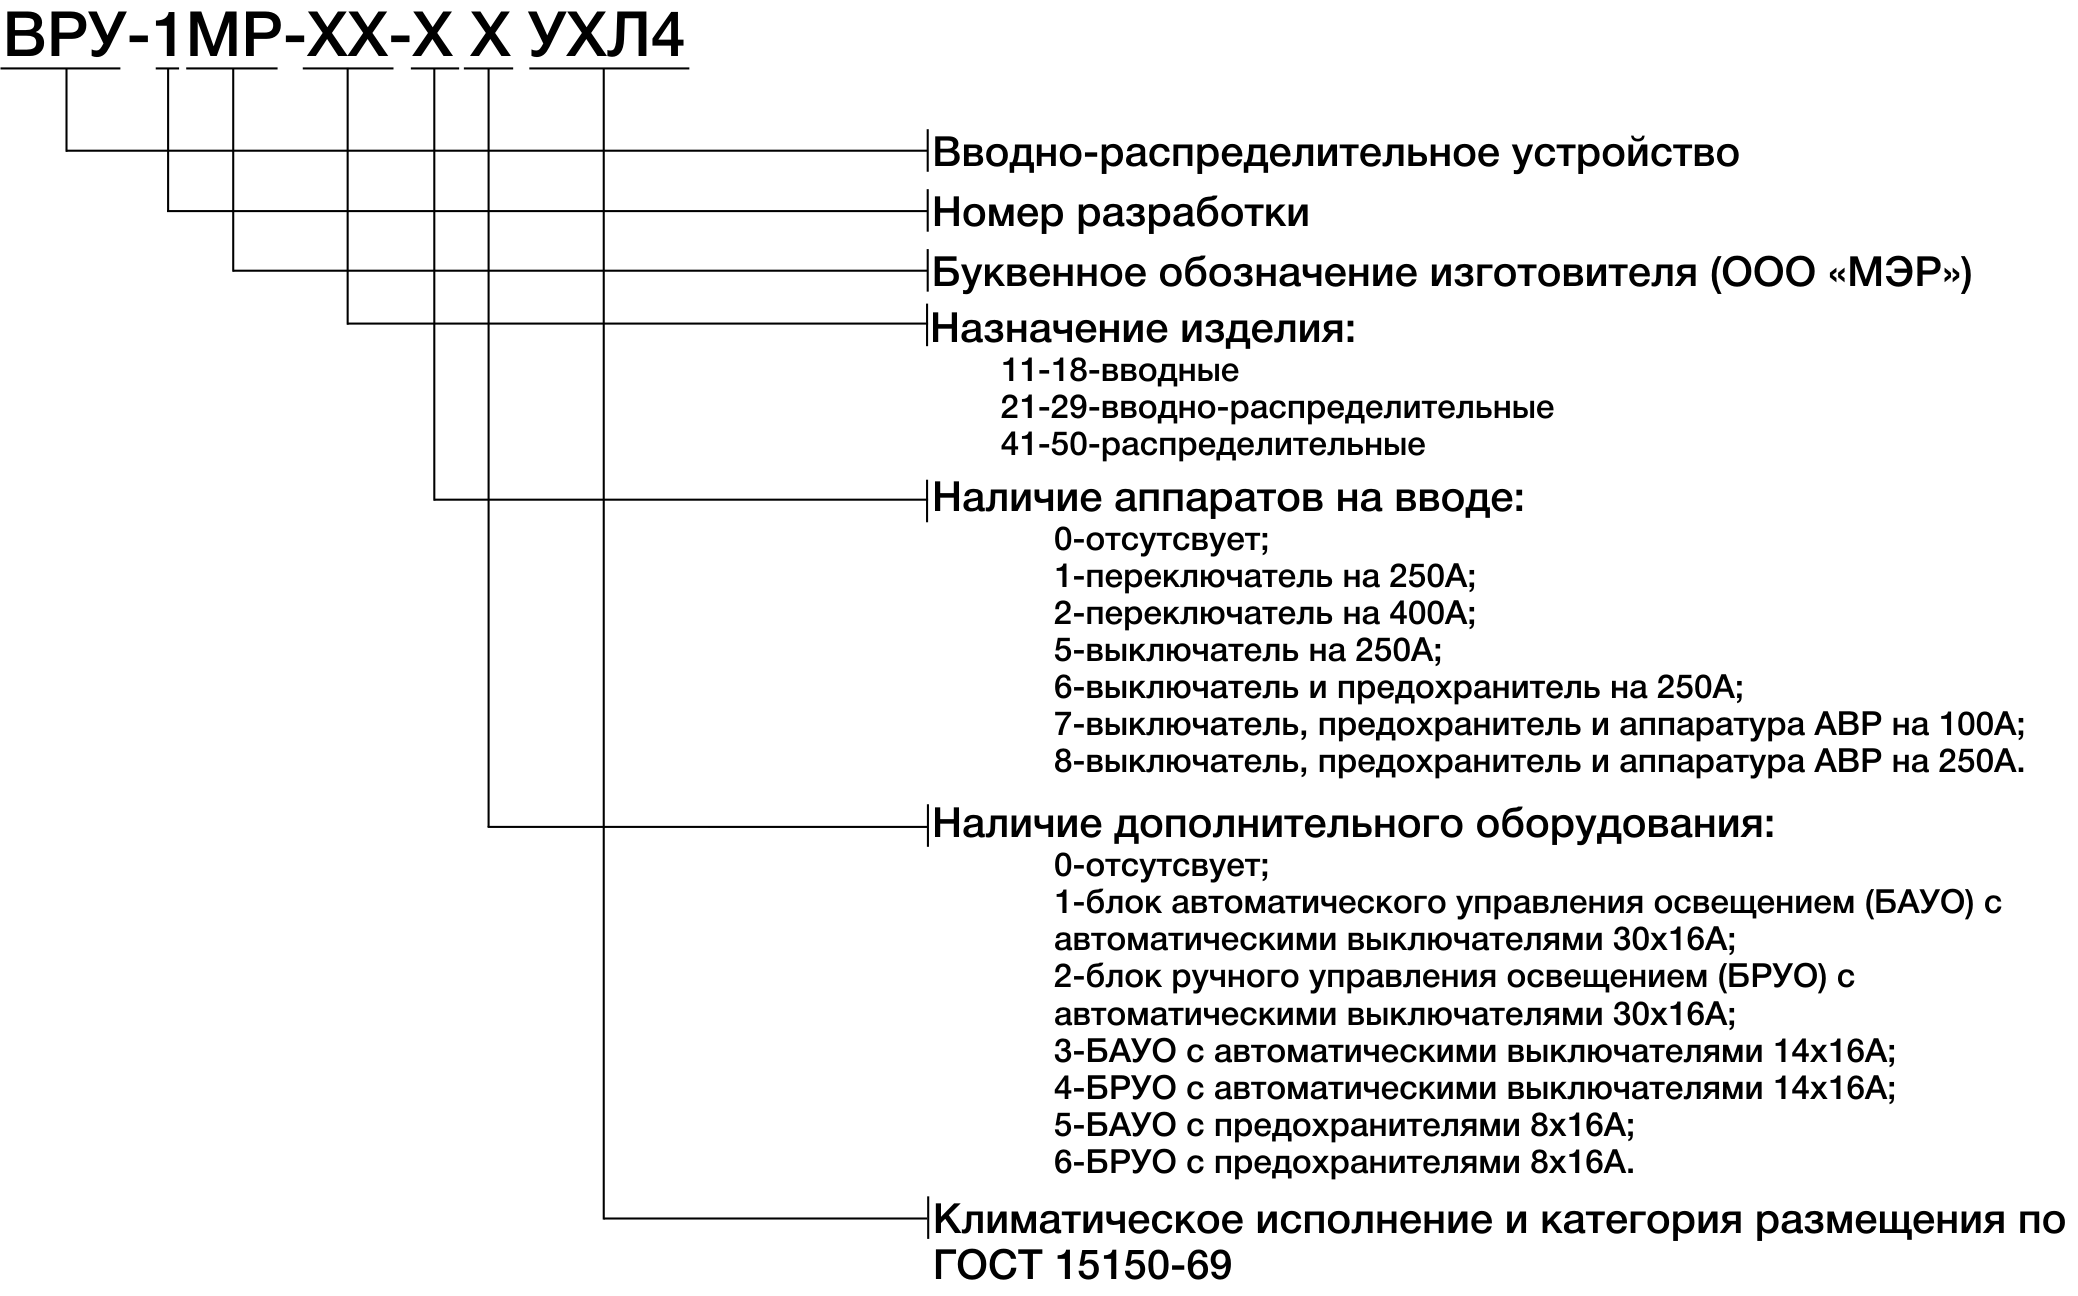 Структура условного обозначения ВРУ-1МР